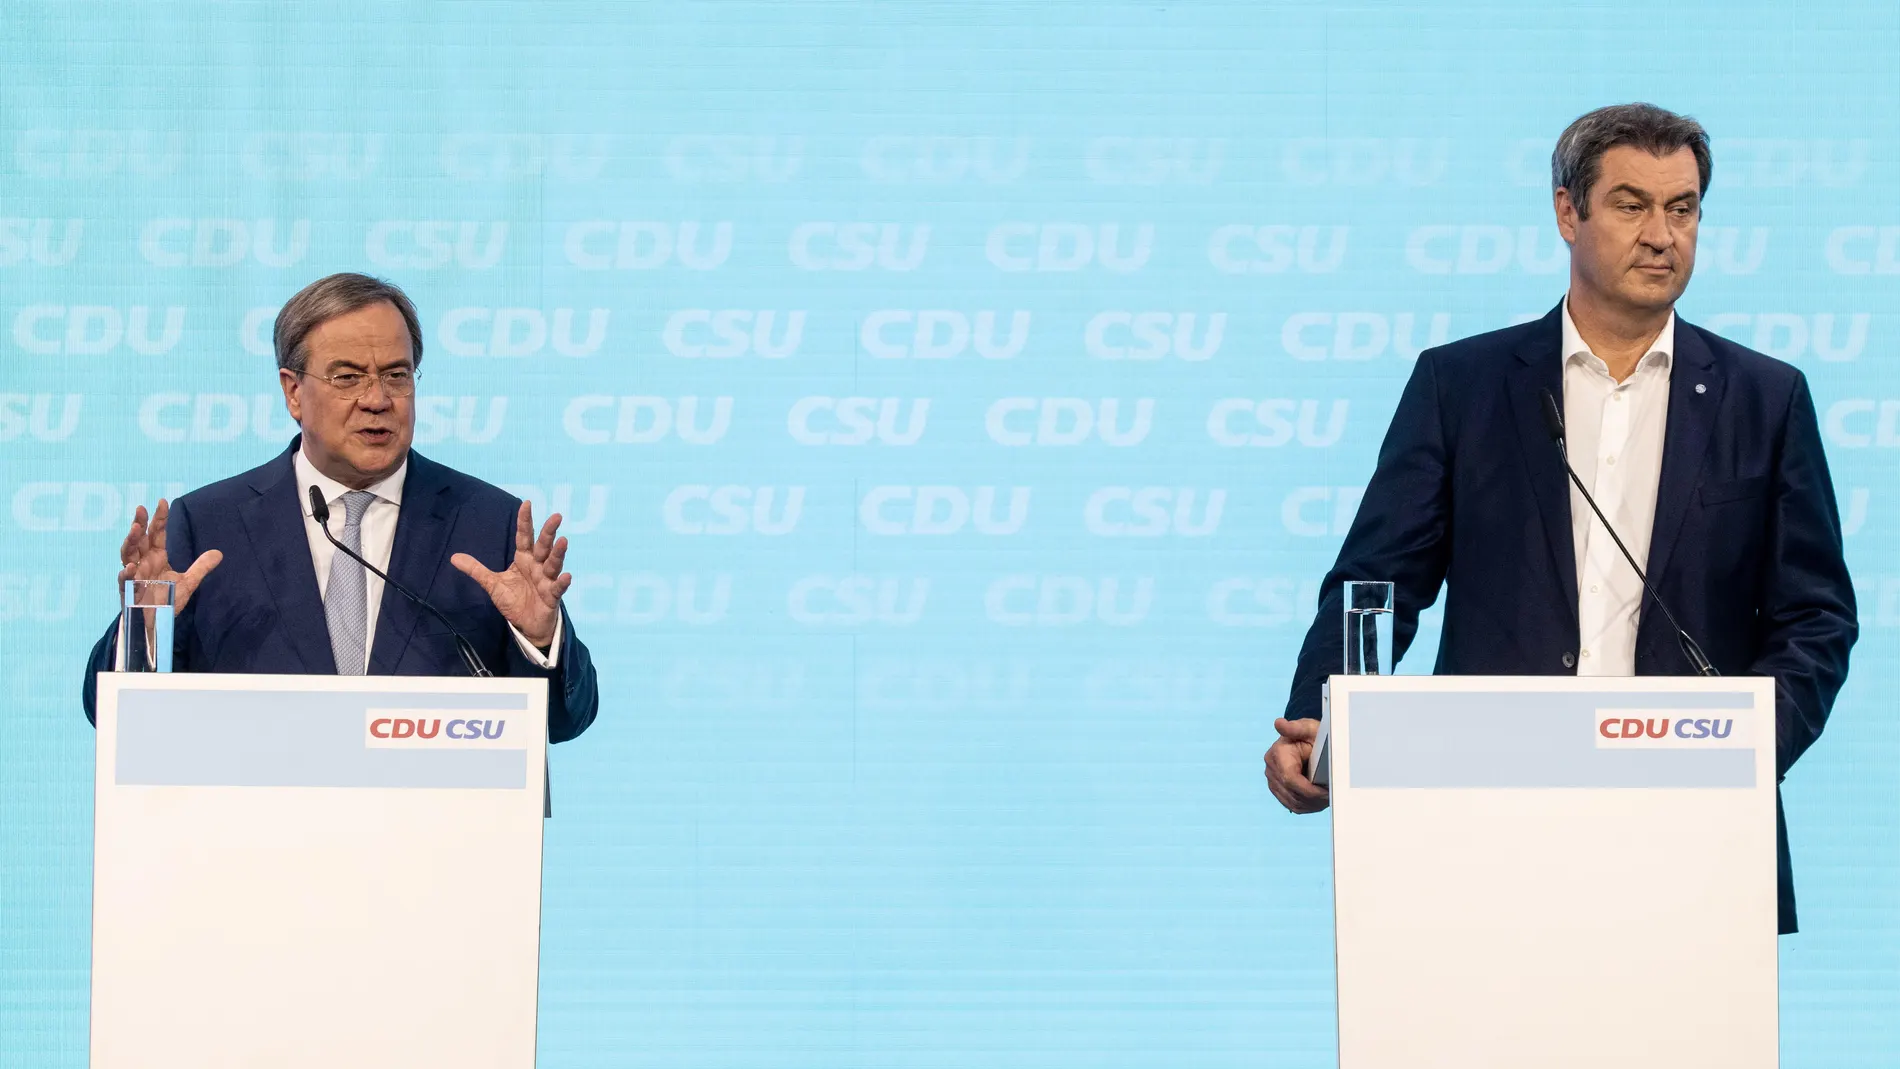 El líder de la CDU, Armin Laschet, presenta el programa electoral de la Unión junto al presidente bávaro y líder de la CSU, Markus Söder